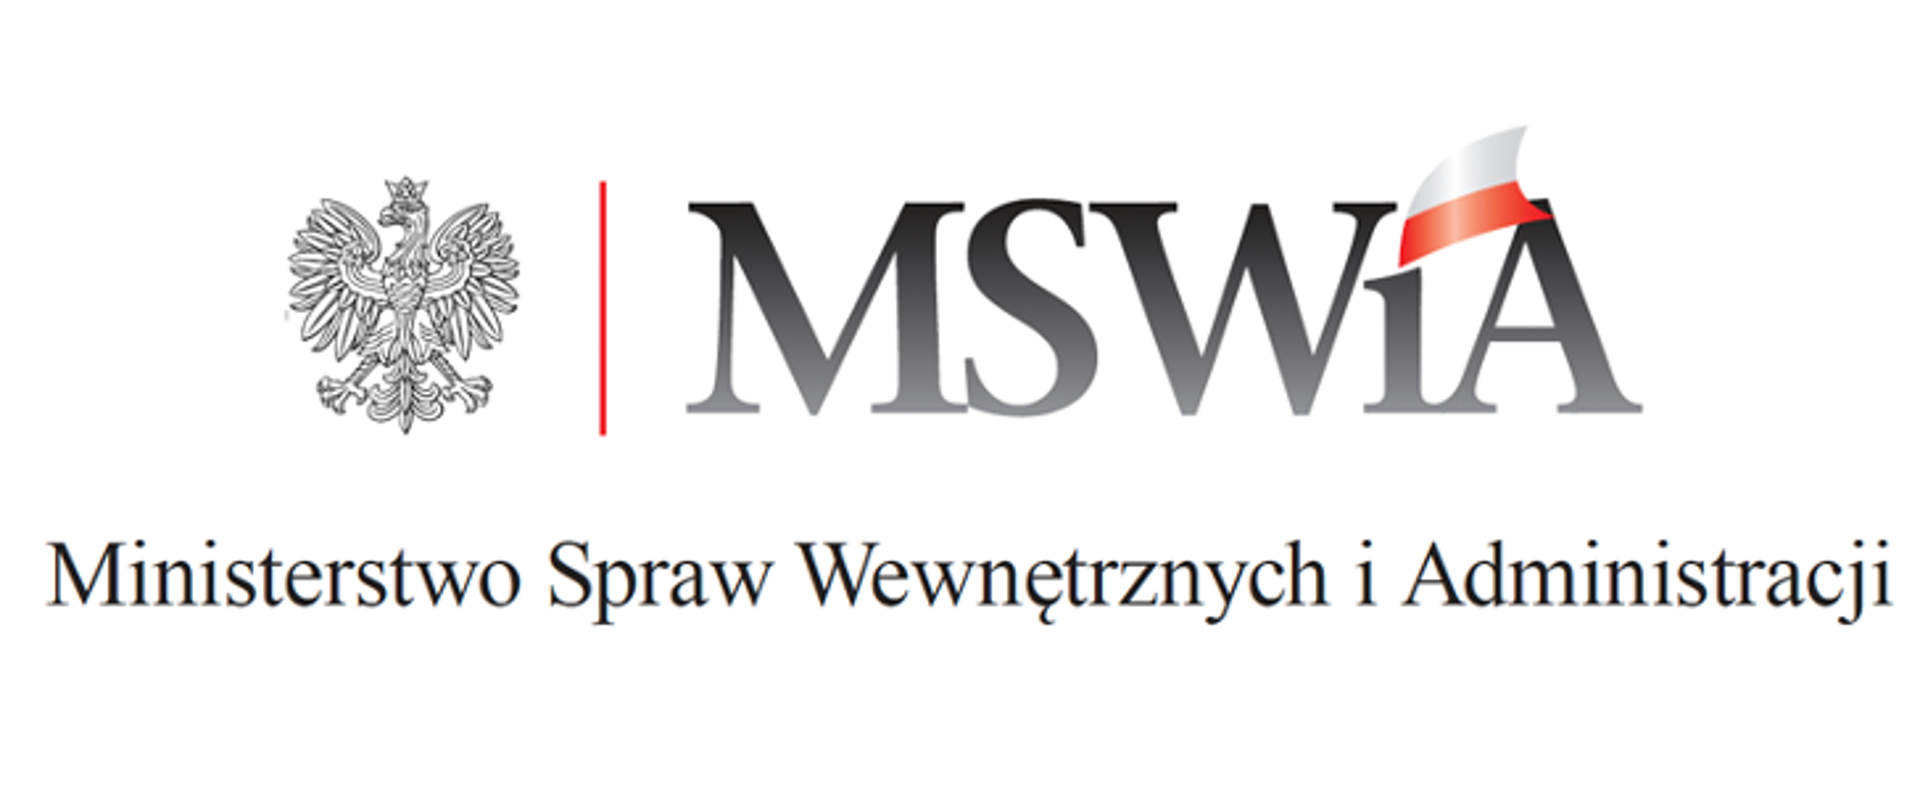 Zdjęcie przedstawia logo MSWIA